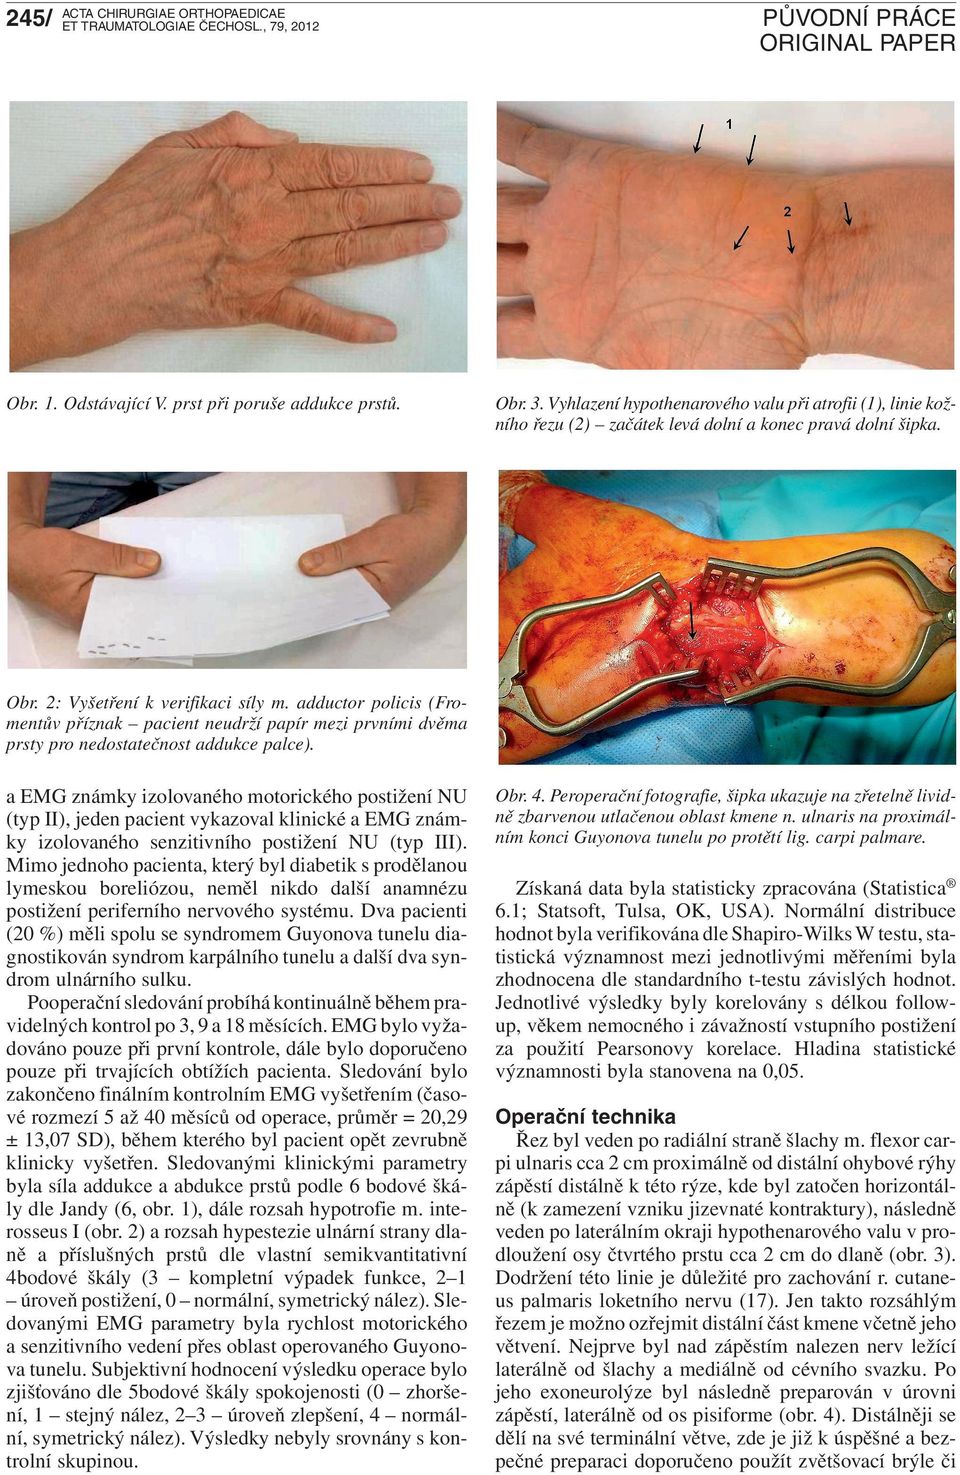 adductor policis (Fromentův příznak pacient neudrží papír mezi prvními dvěma prsty pro nedostatečnost addukce palce).